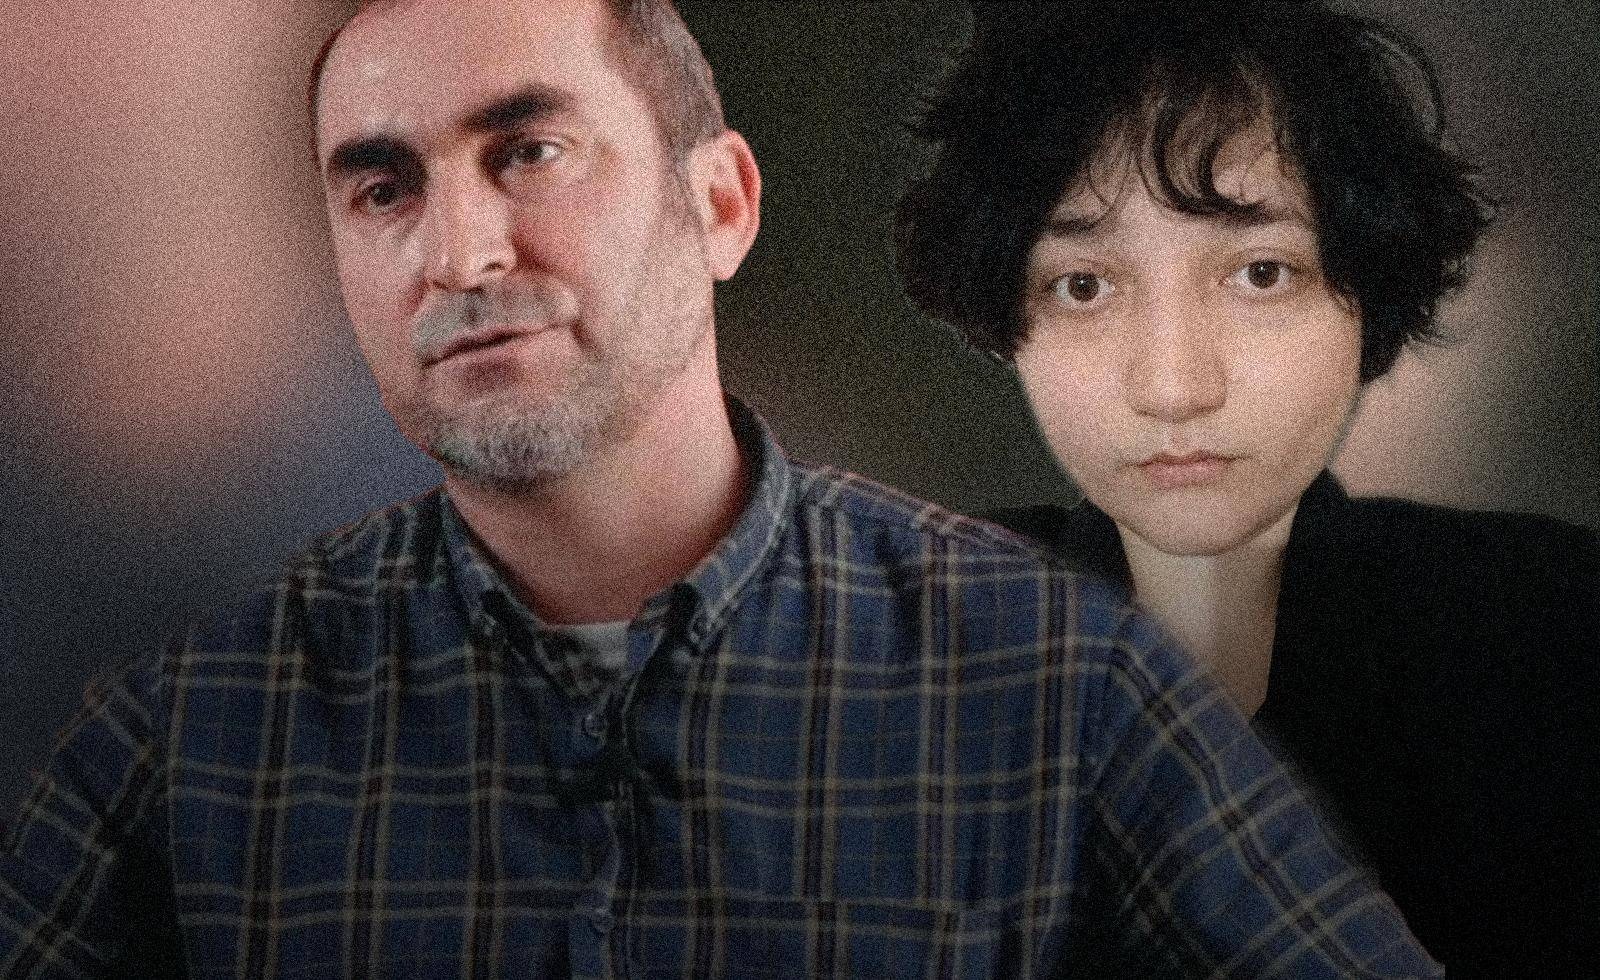 Правозащитник Магомед Аламов подвез девушку из Ингушетии, которая сбежала от насилия дома. Теперь ему и его семье угрожают убийством.